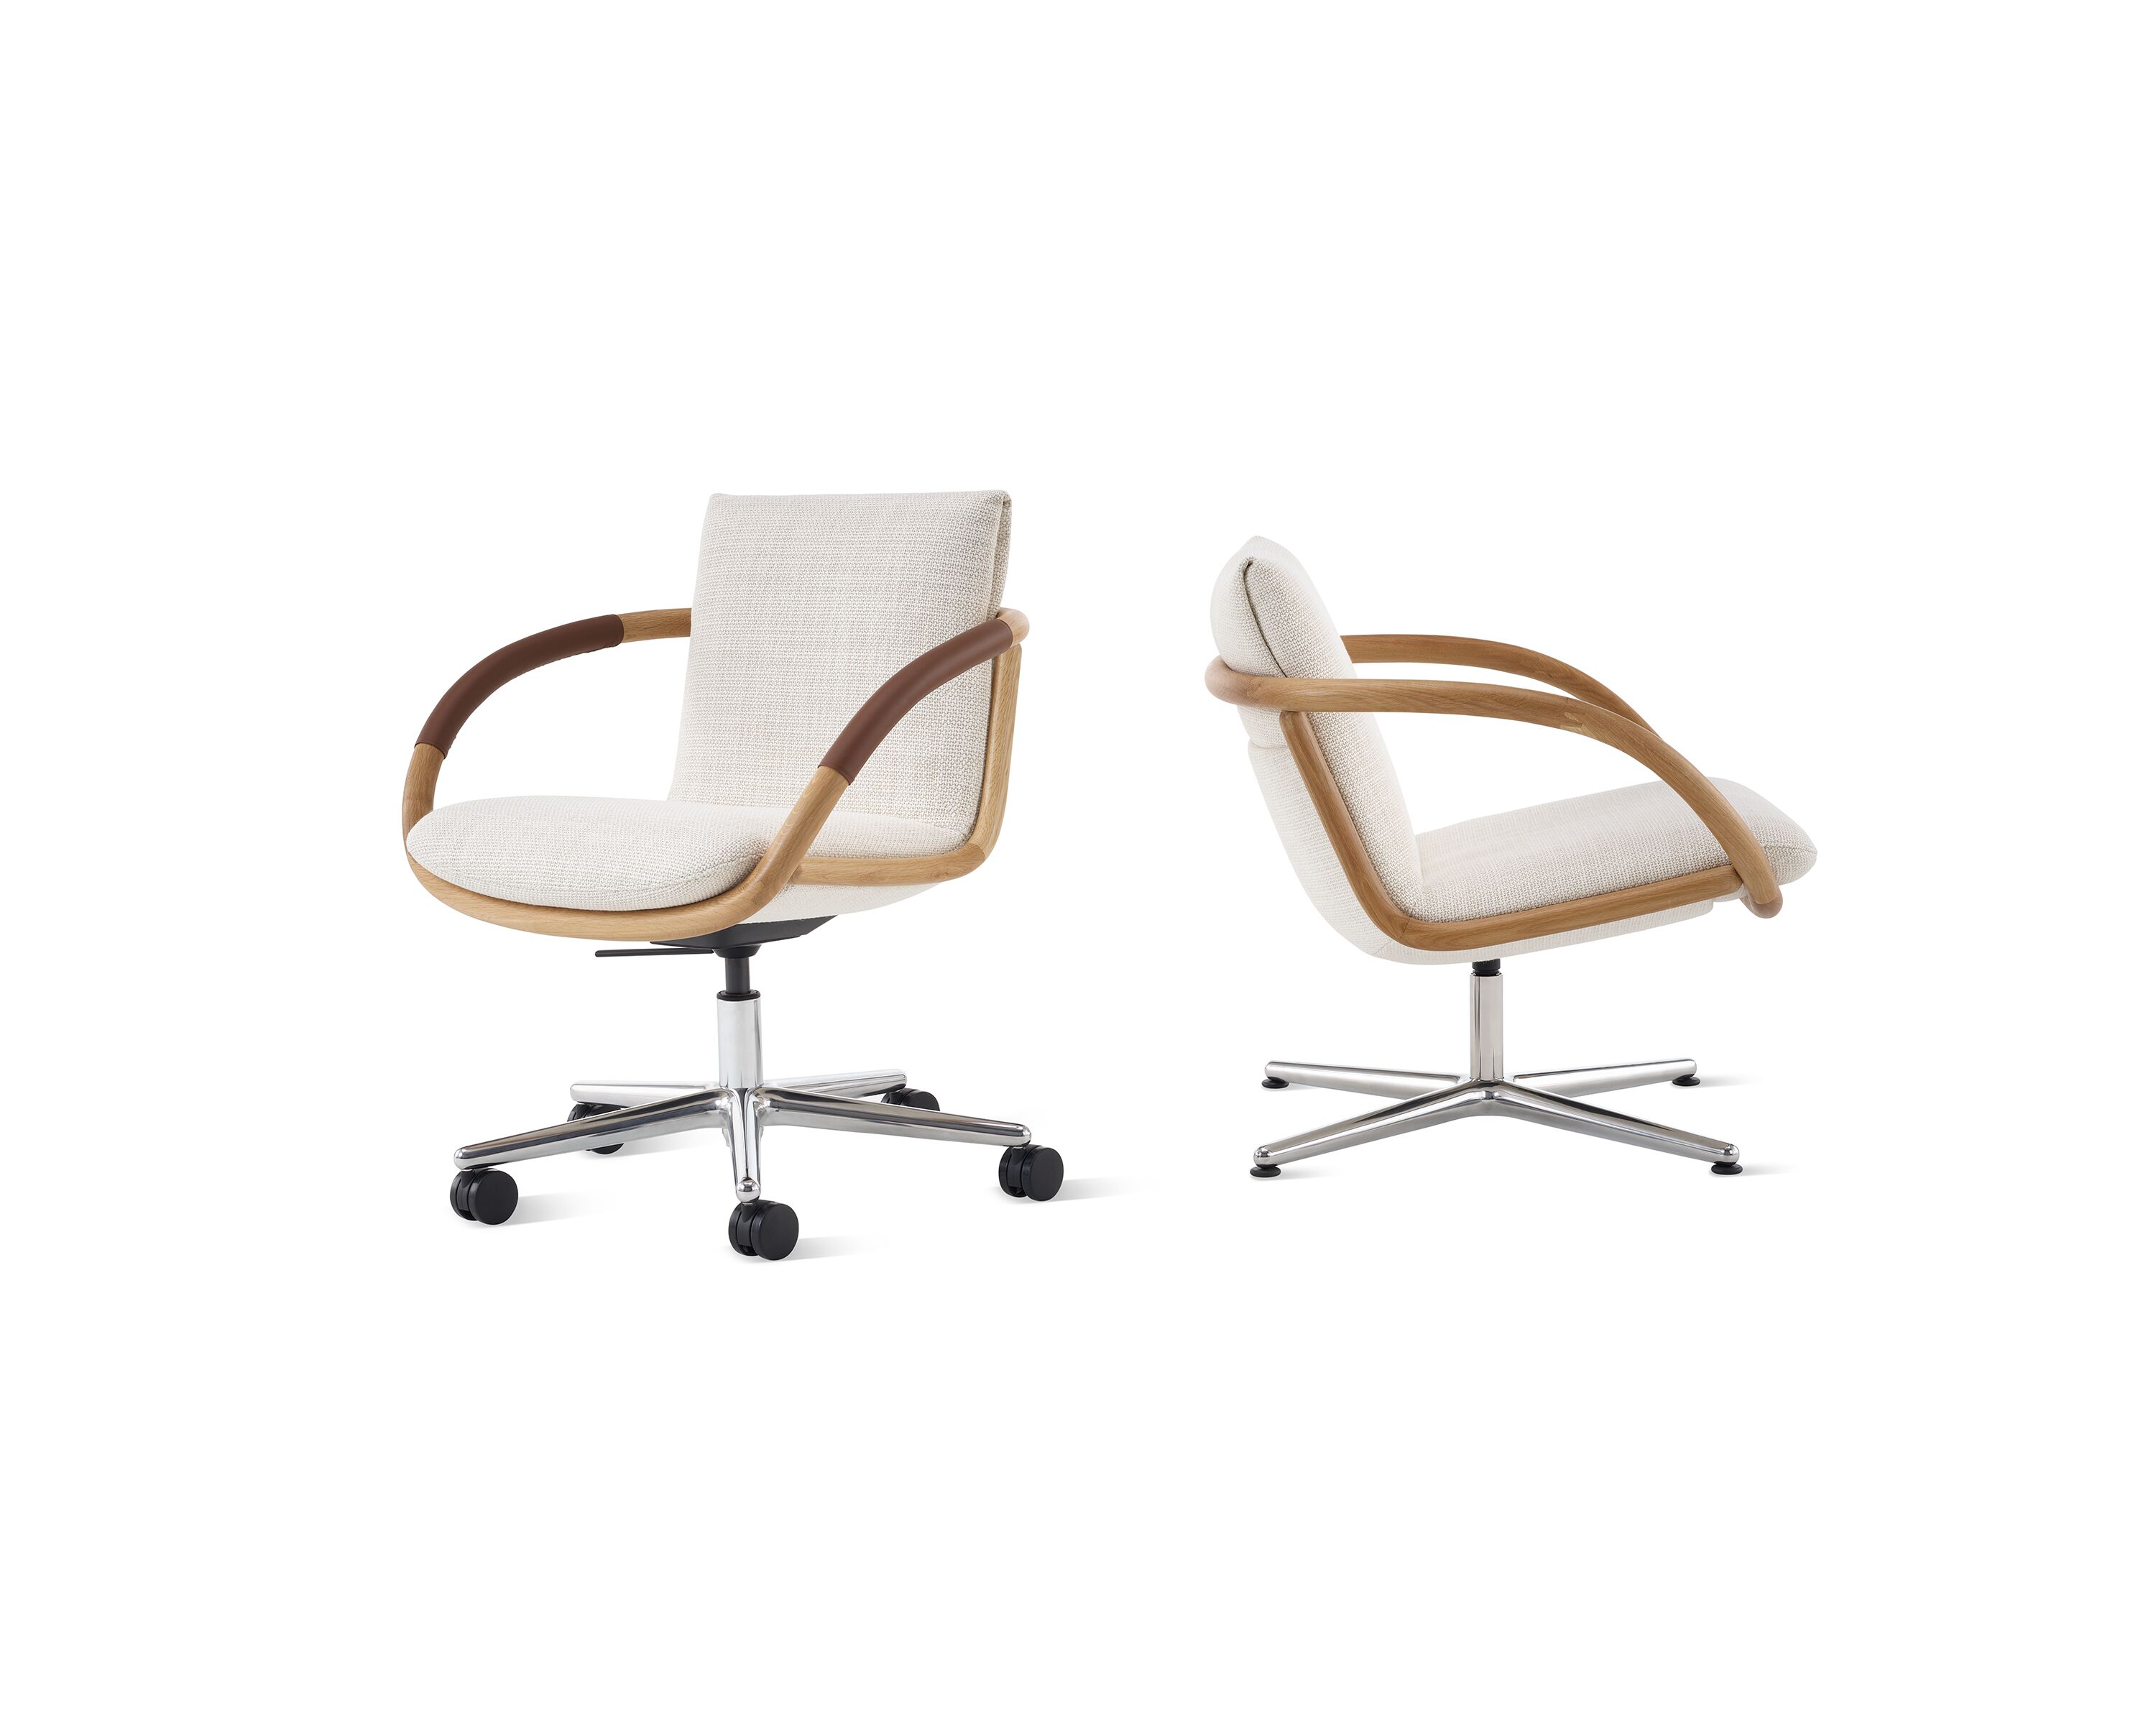 Full Loop Chair and Full Loop Lounge Chair - Herman Miller